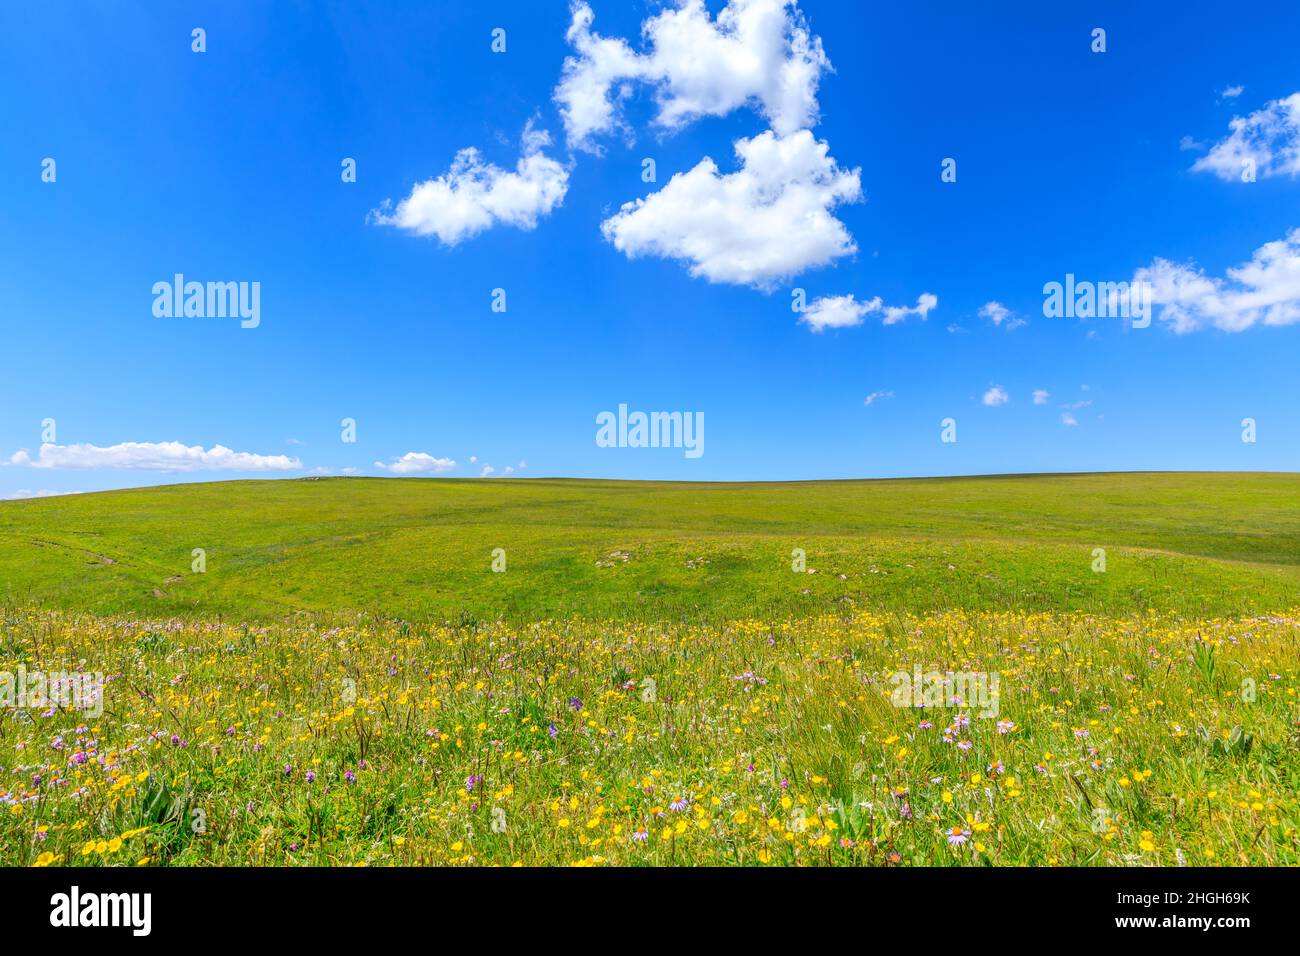 Hierba verde y cielo azul con fondo de nubes blancas. Foto de stock